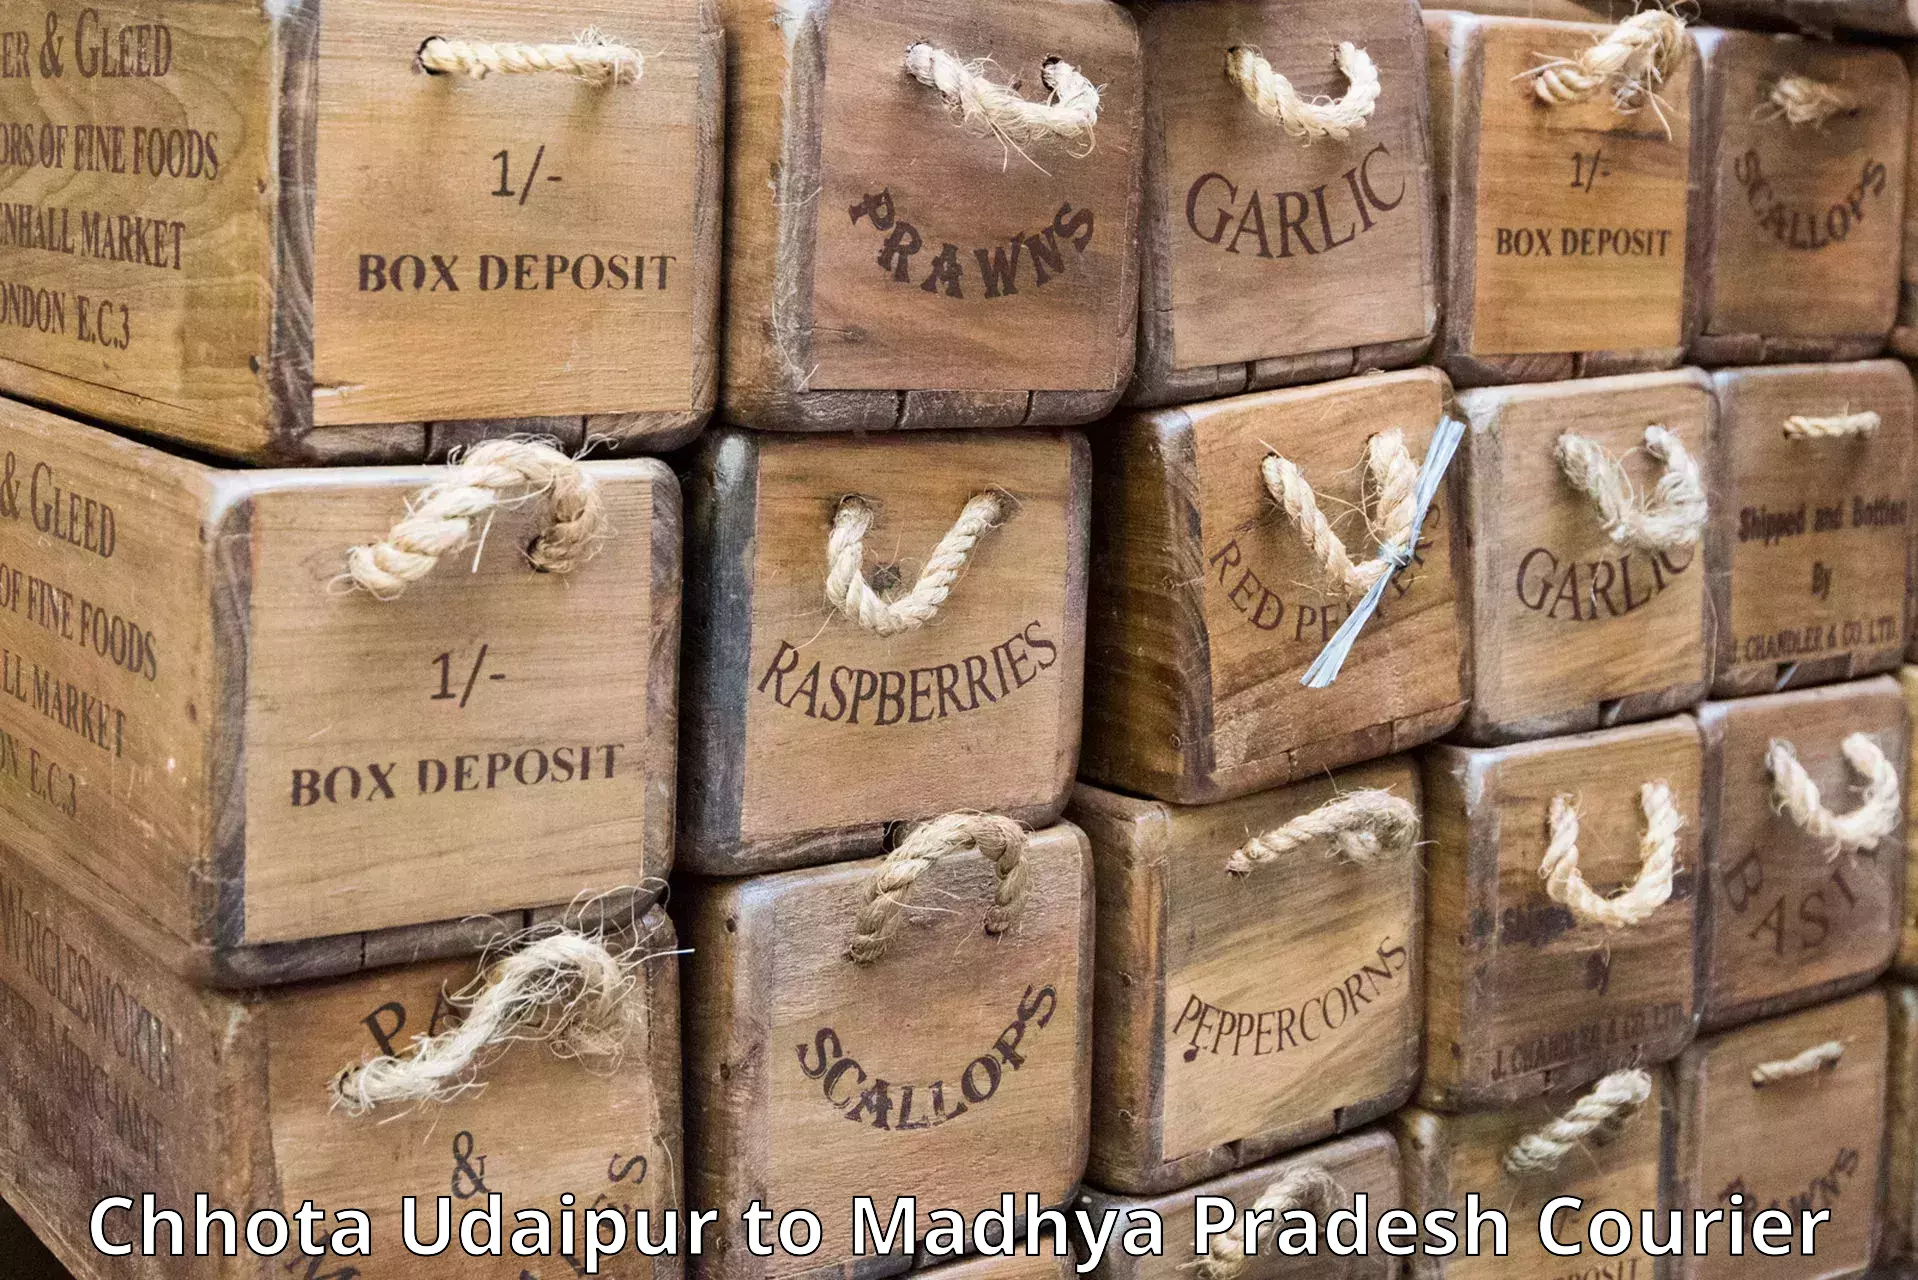 On-demand shipping options Chhota Udaipur to Sardarpur